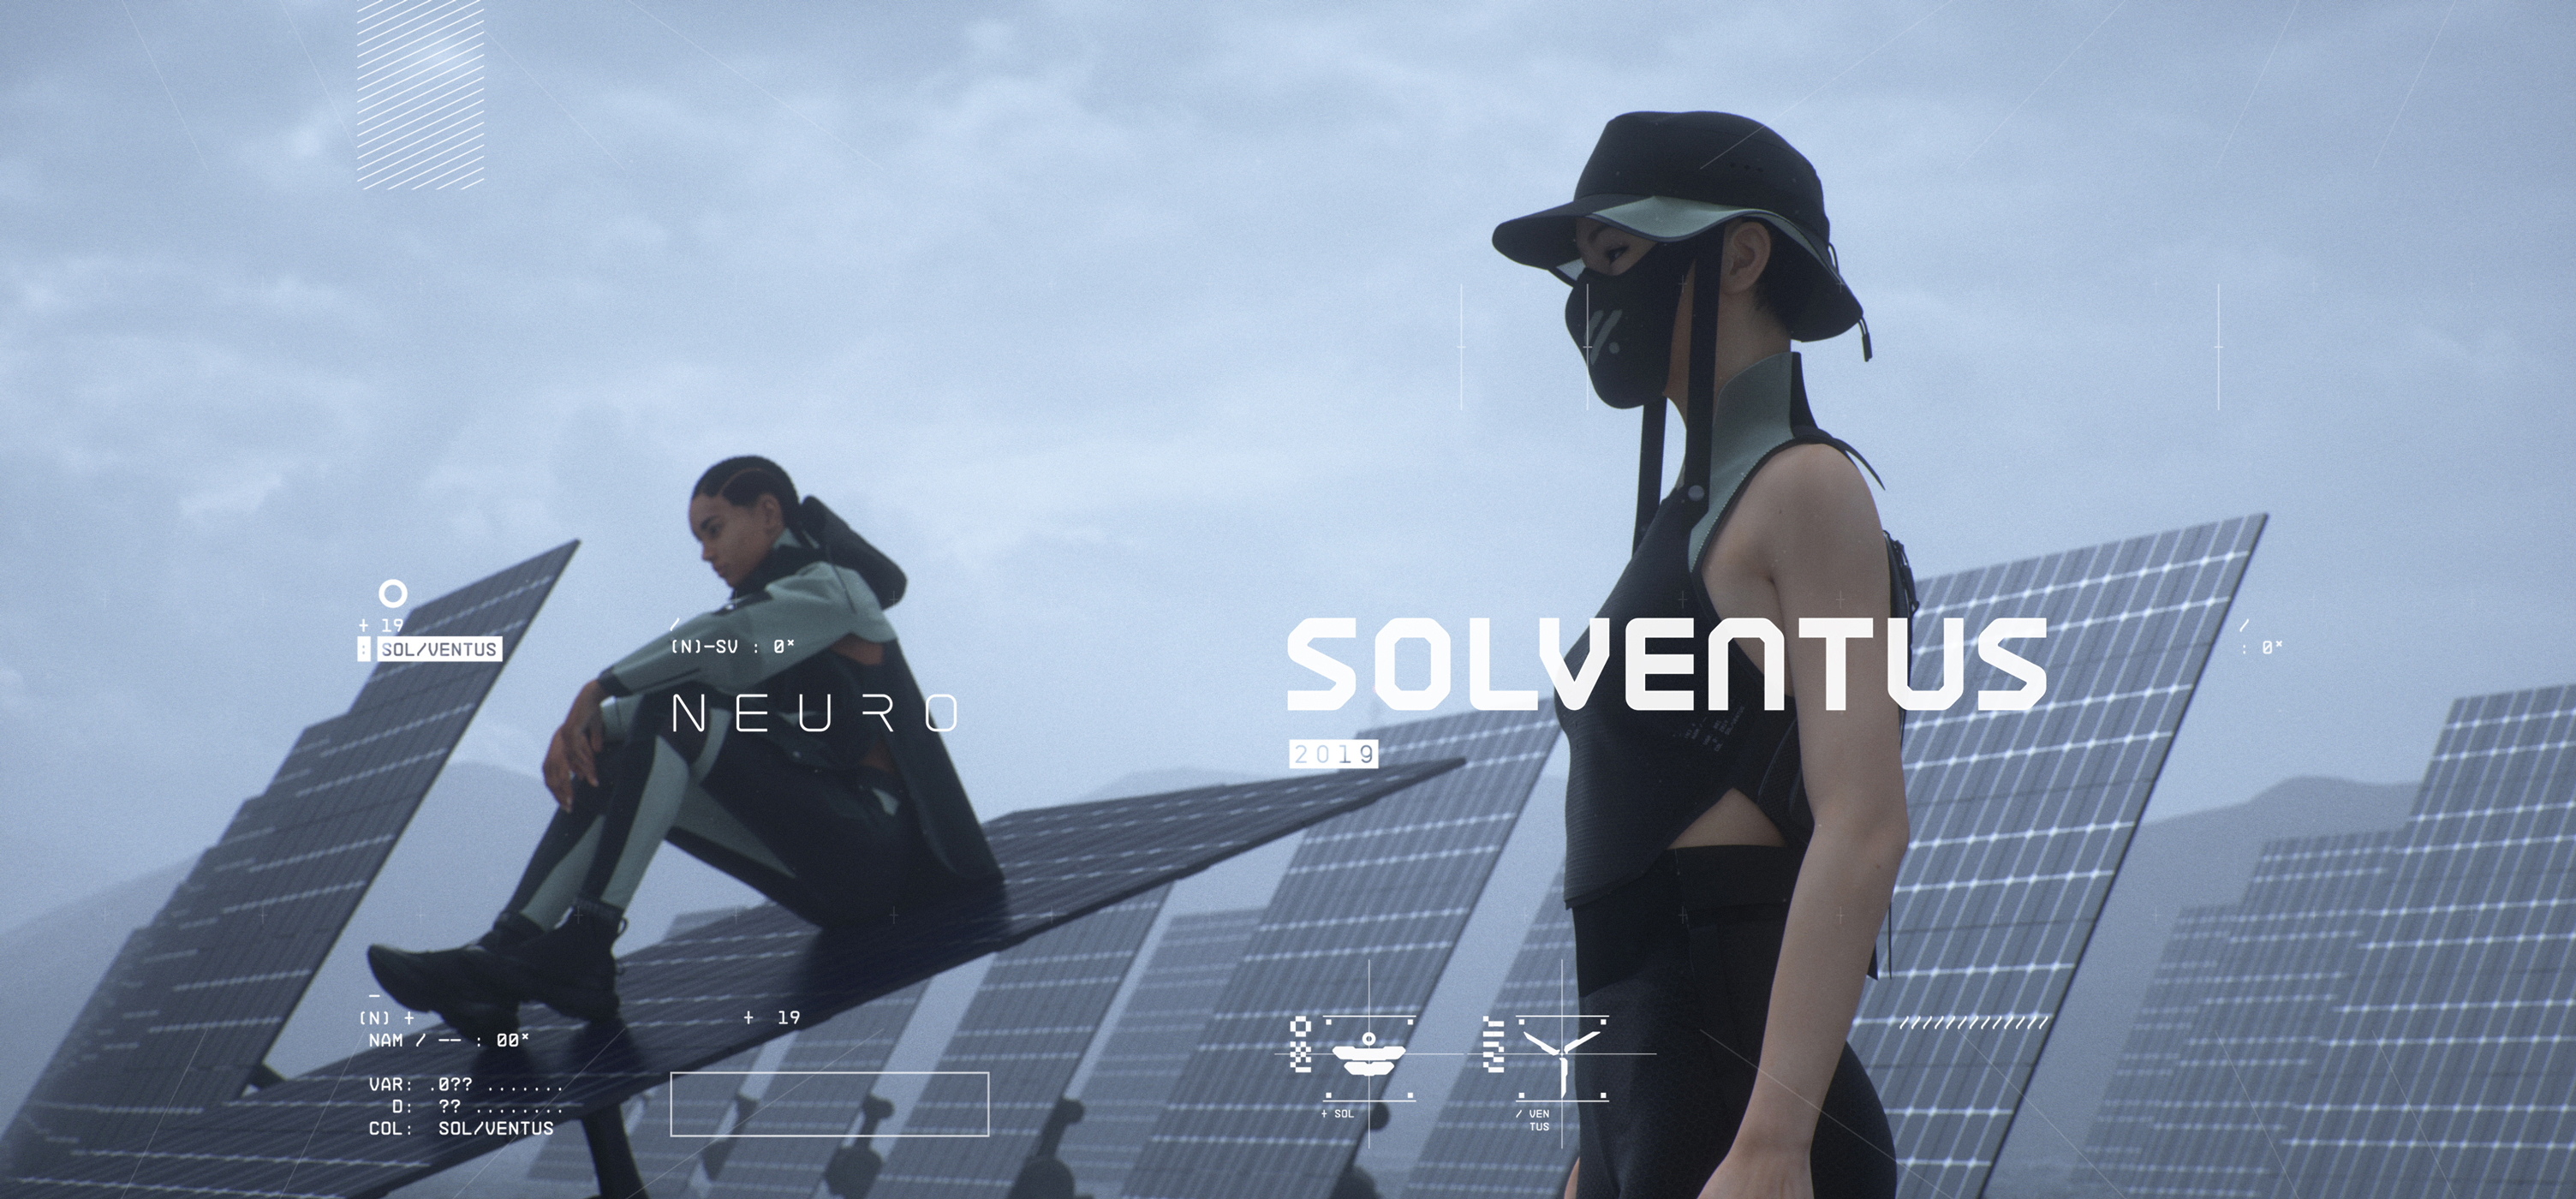 NEURO Solventus 2019 Campaign 01